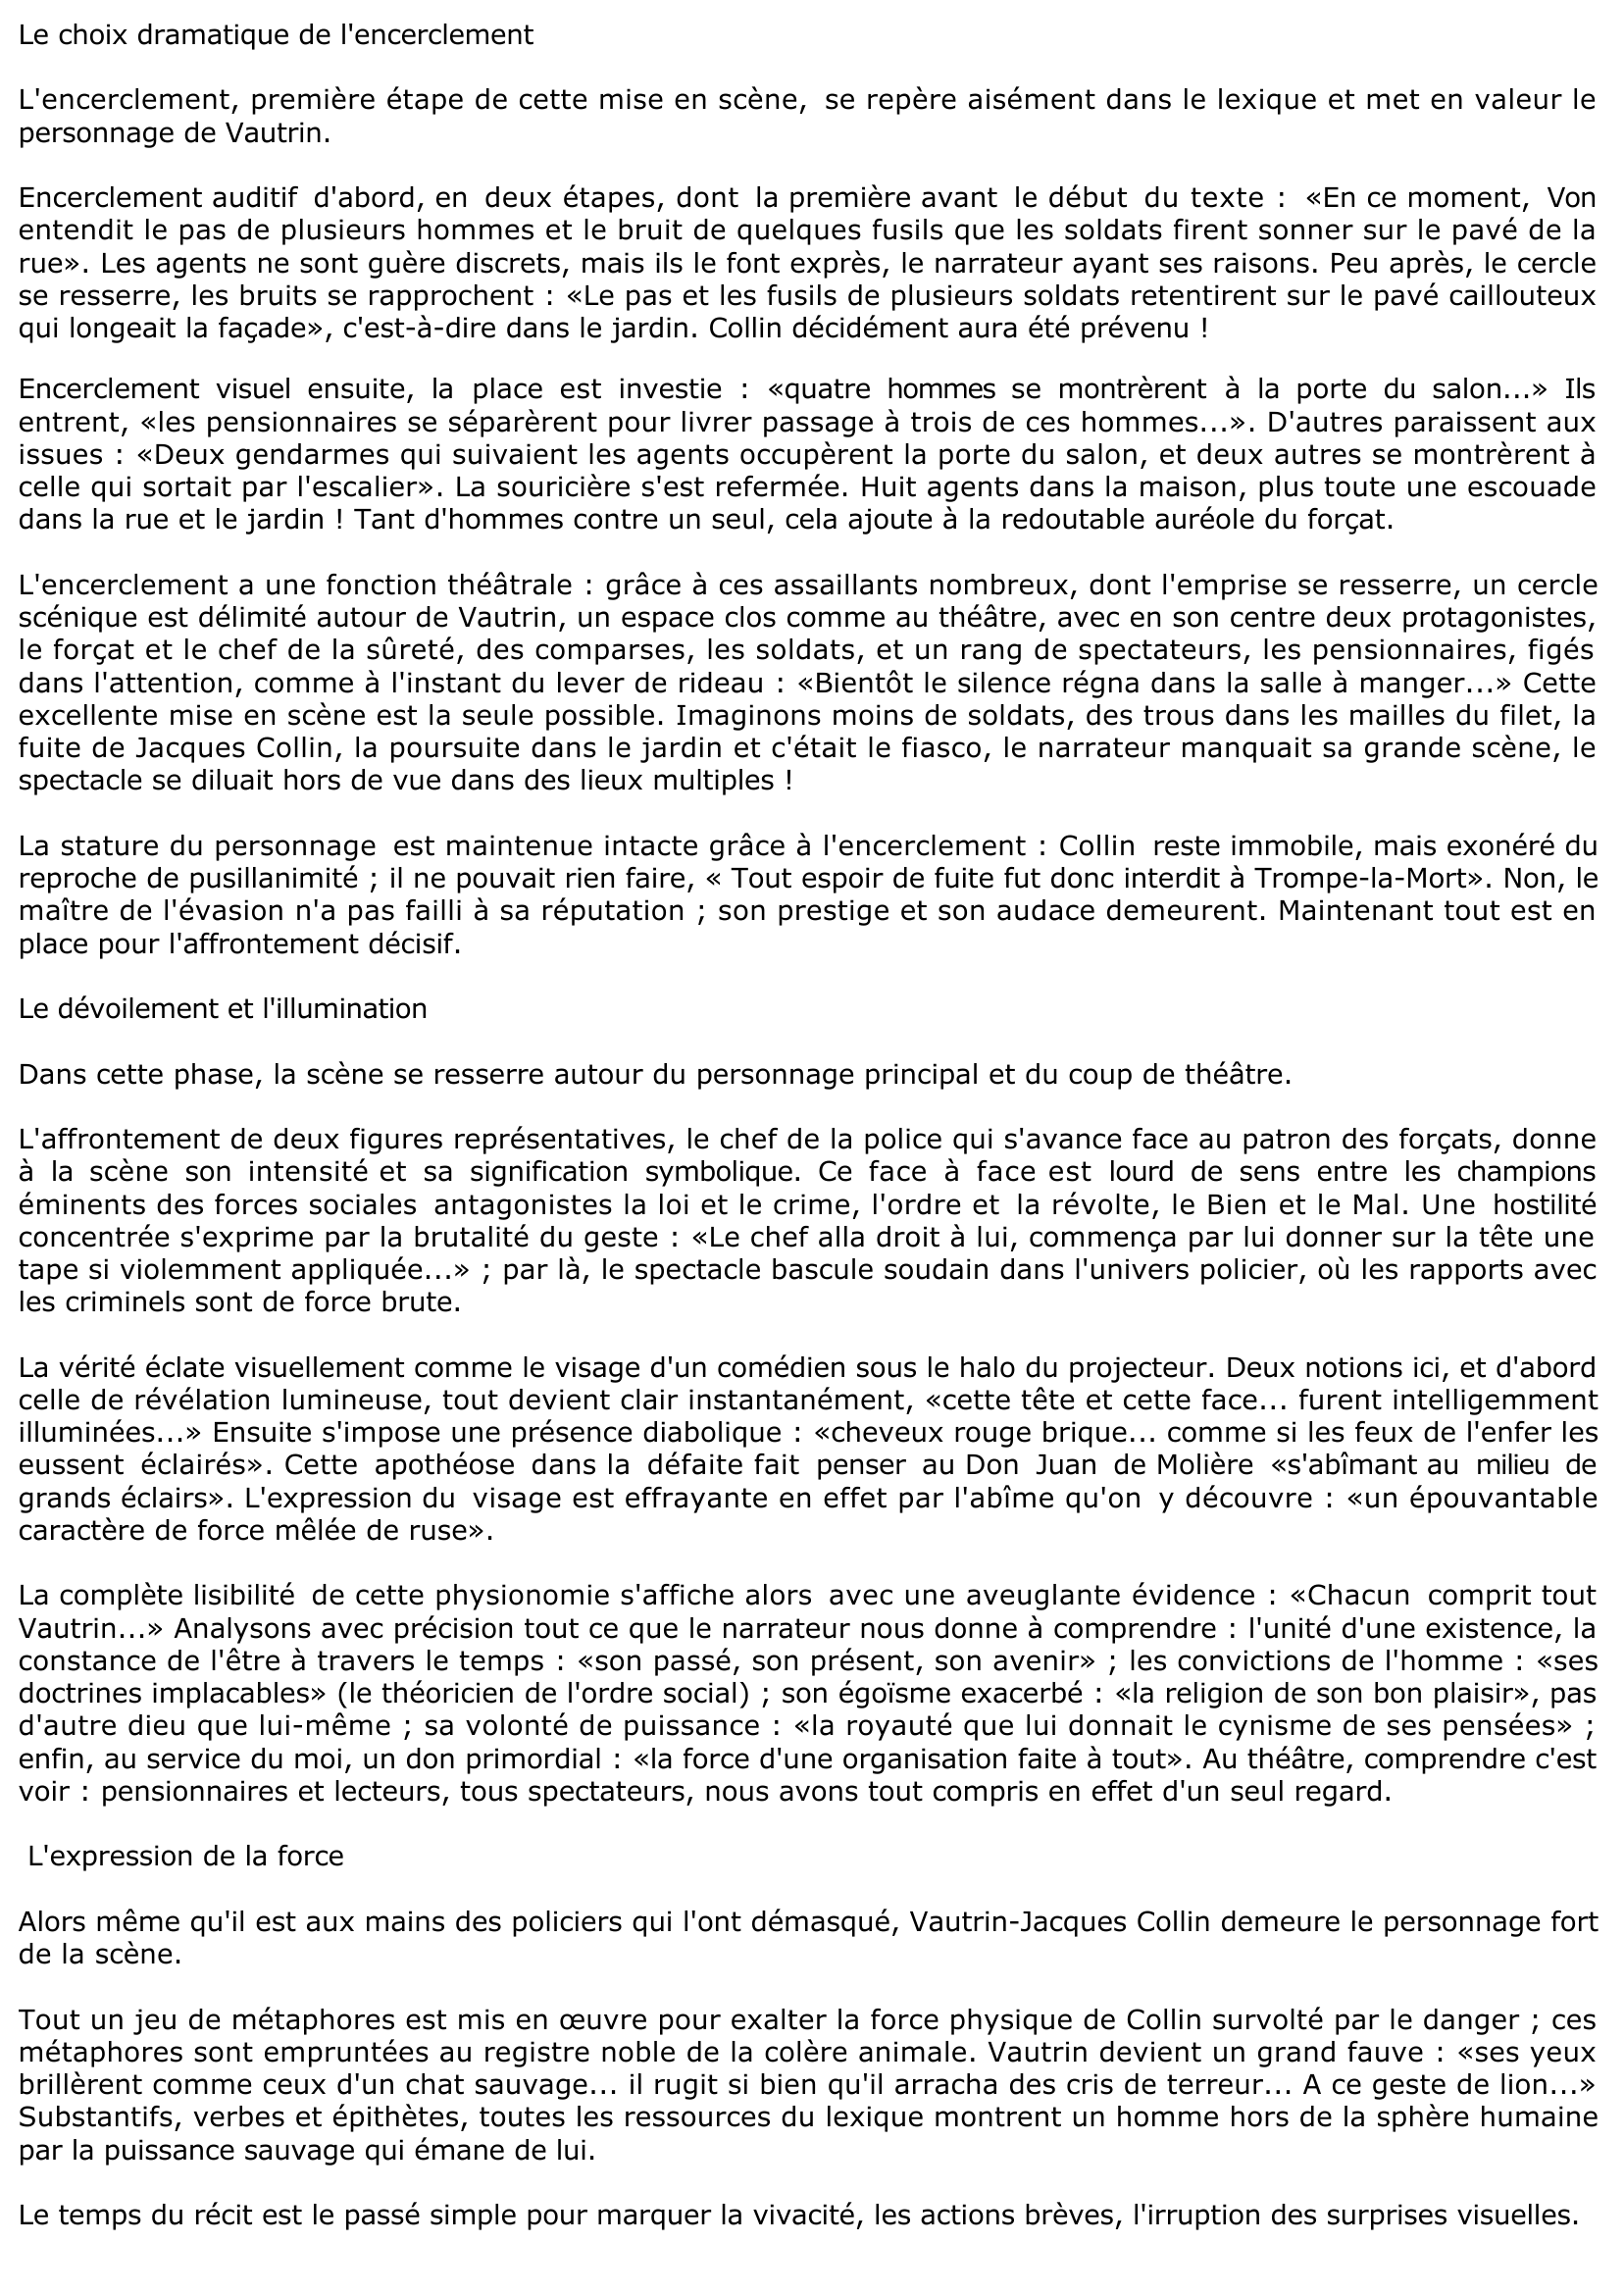 Prévisualisation du document L'arrestation de Vautrin («Bientôt le silence... regarda sa perruque», pp. 262-264) - Le père Goriot de Balzac